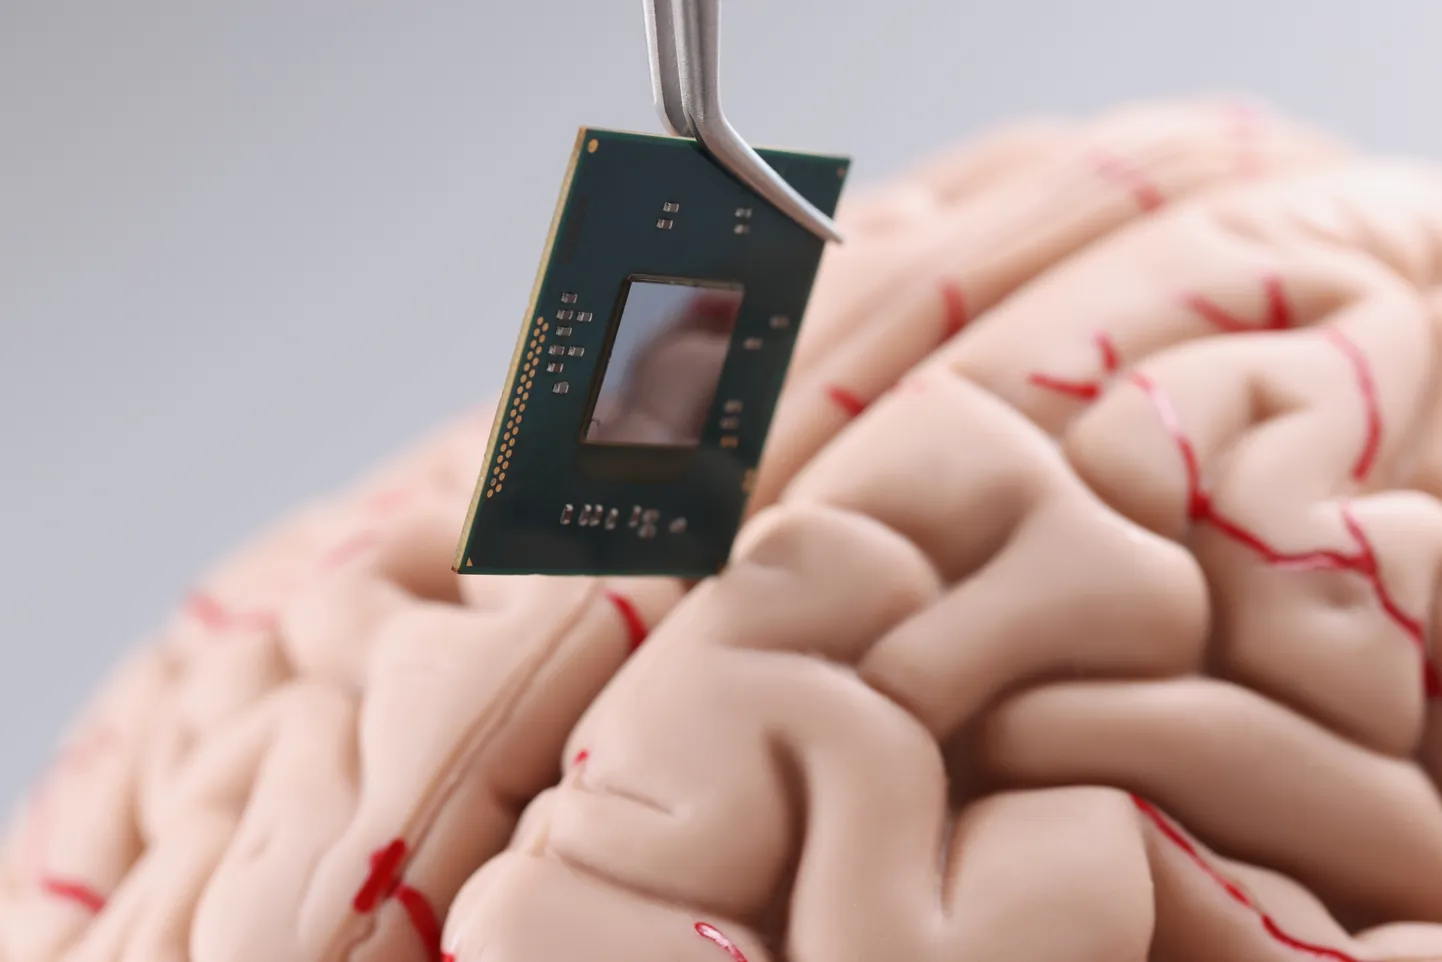 Teadlane kasutab pintsetttööriista, et panna inimese aju mudelisse väikesed arvutikiibi üksikasjad.